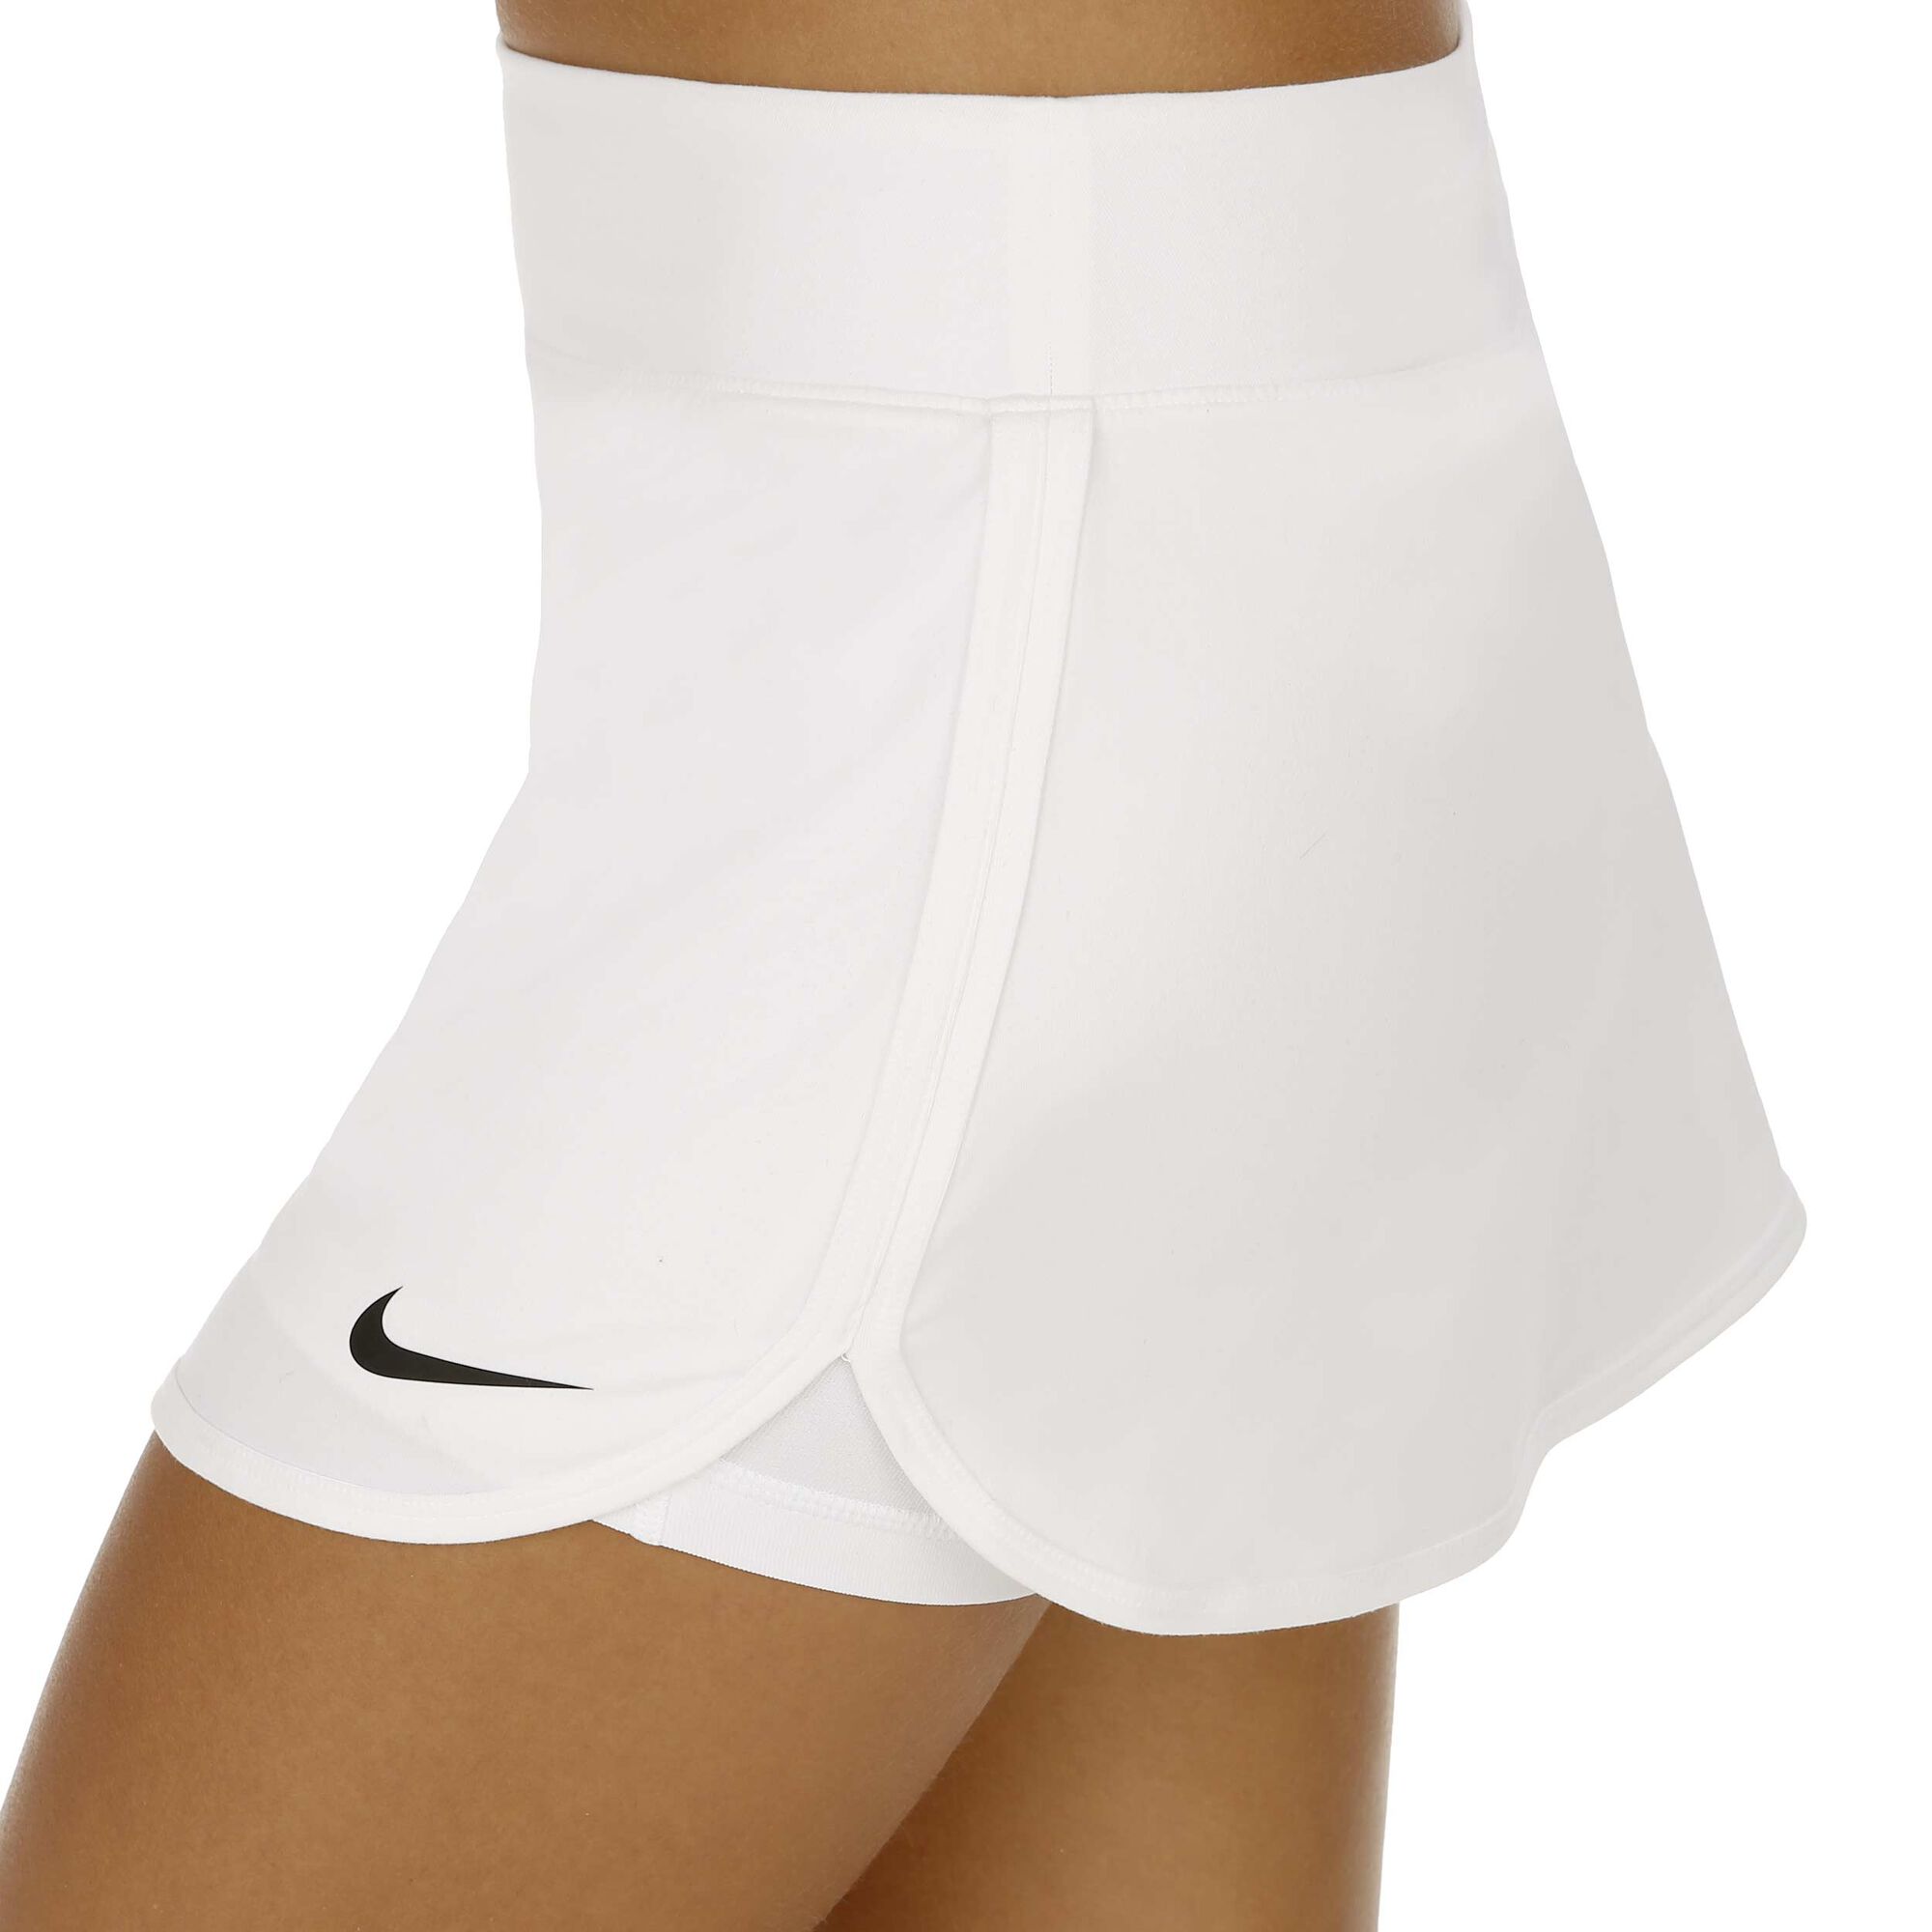 Correspondiente Tubería Salvaje Nike Court Pure Rock Damen - Weiß, Schwarz online kaufen | Tennis-Point